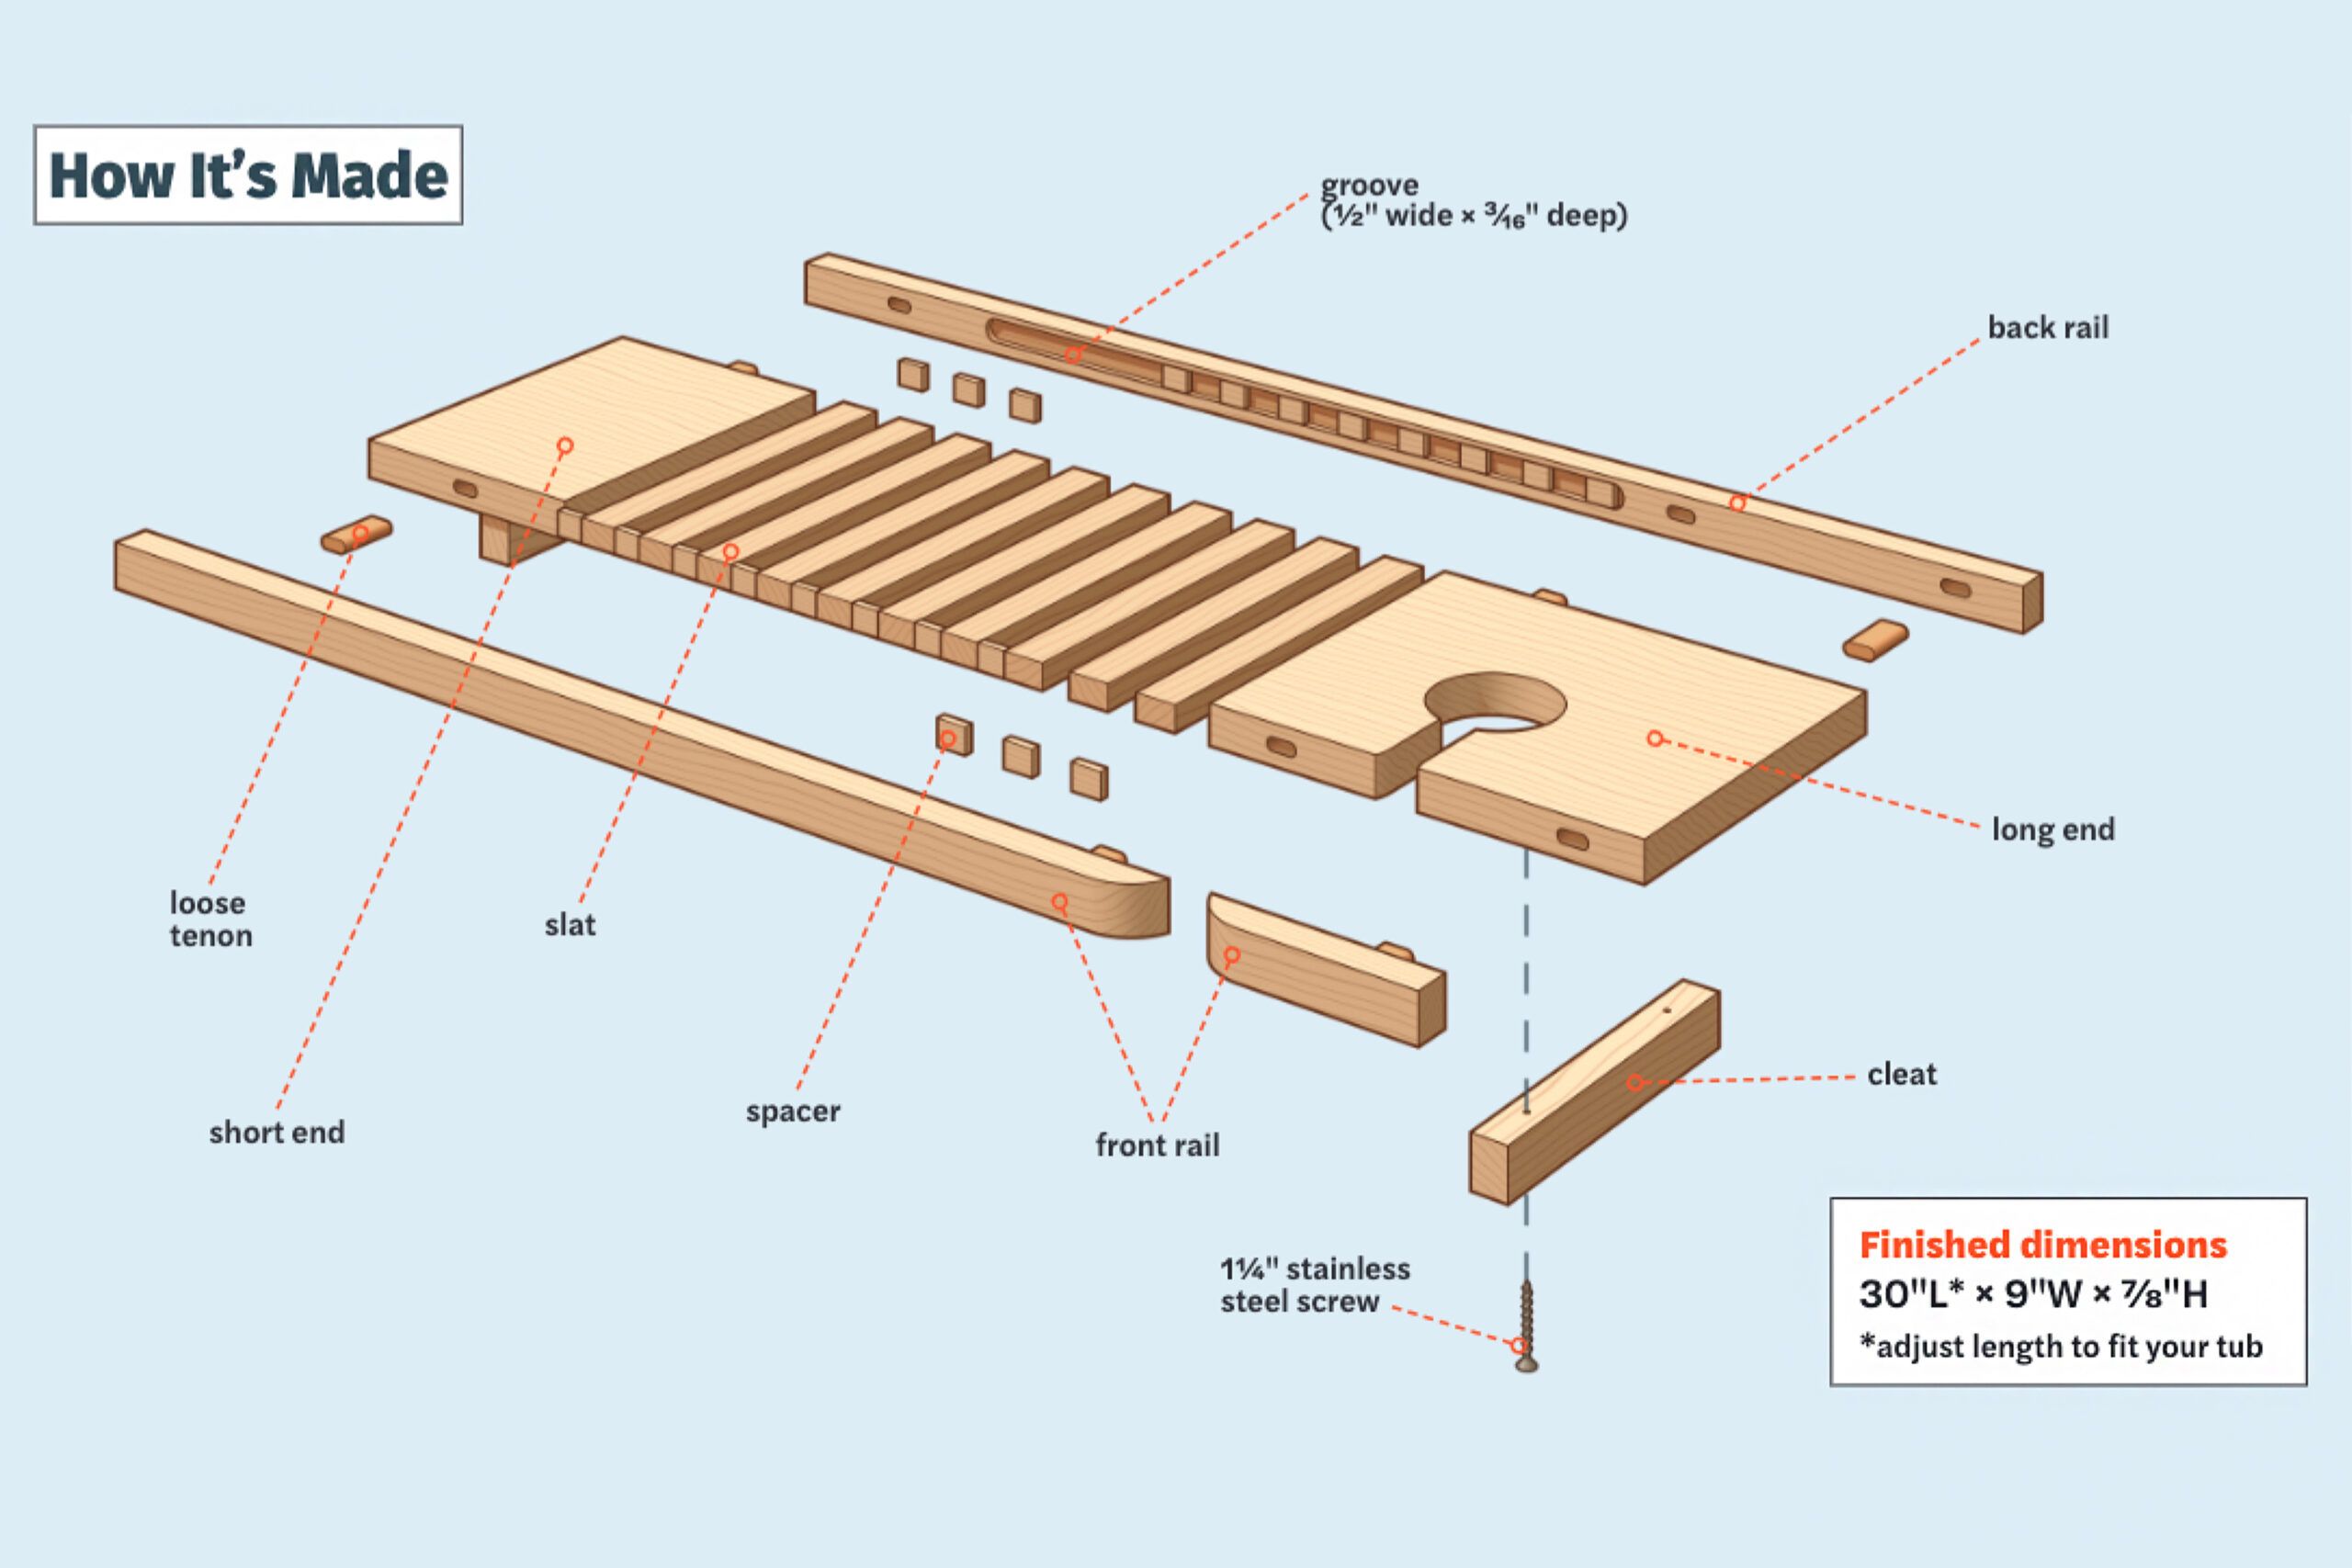 Bath Tray Plan/Bath Caddy Plan/Bathtub Caddy Plan/Wood Tray Plan/tub caddy  plan/tub tray plan/wood plan/wood pattern/soap shelf plan/pdf